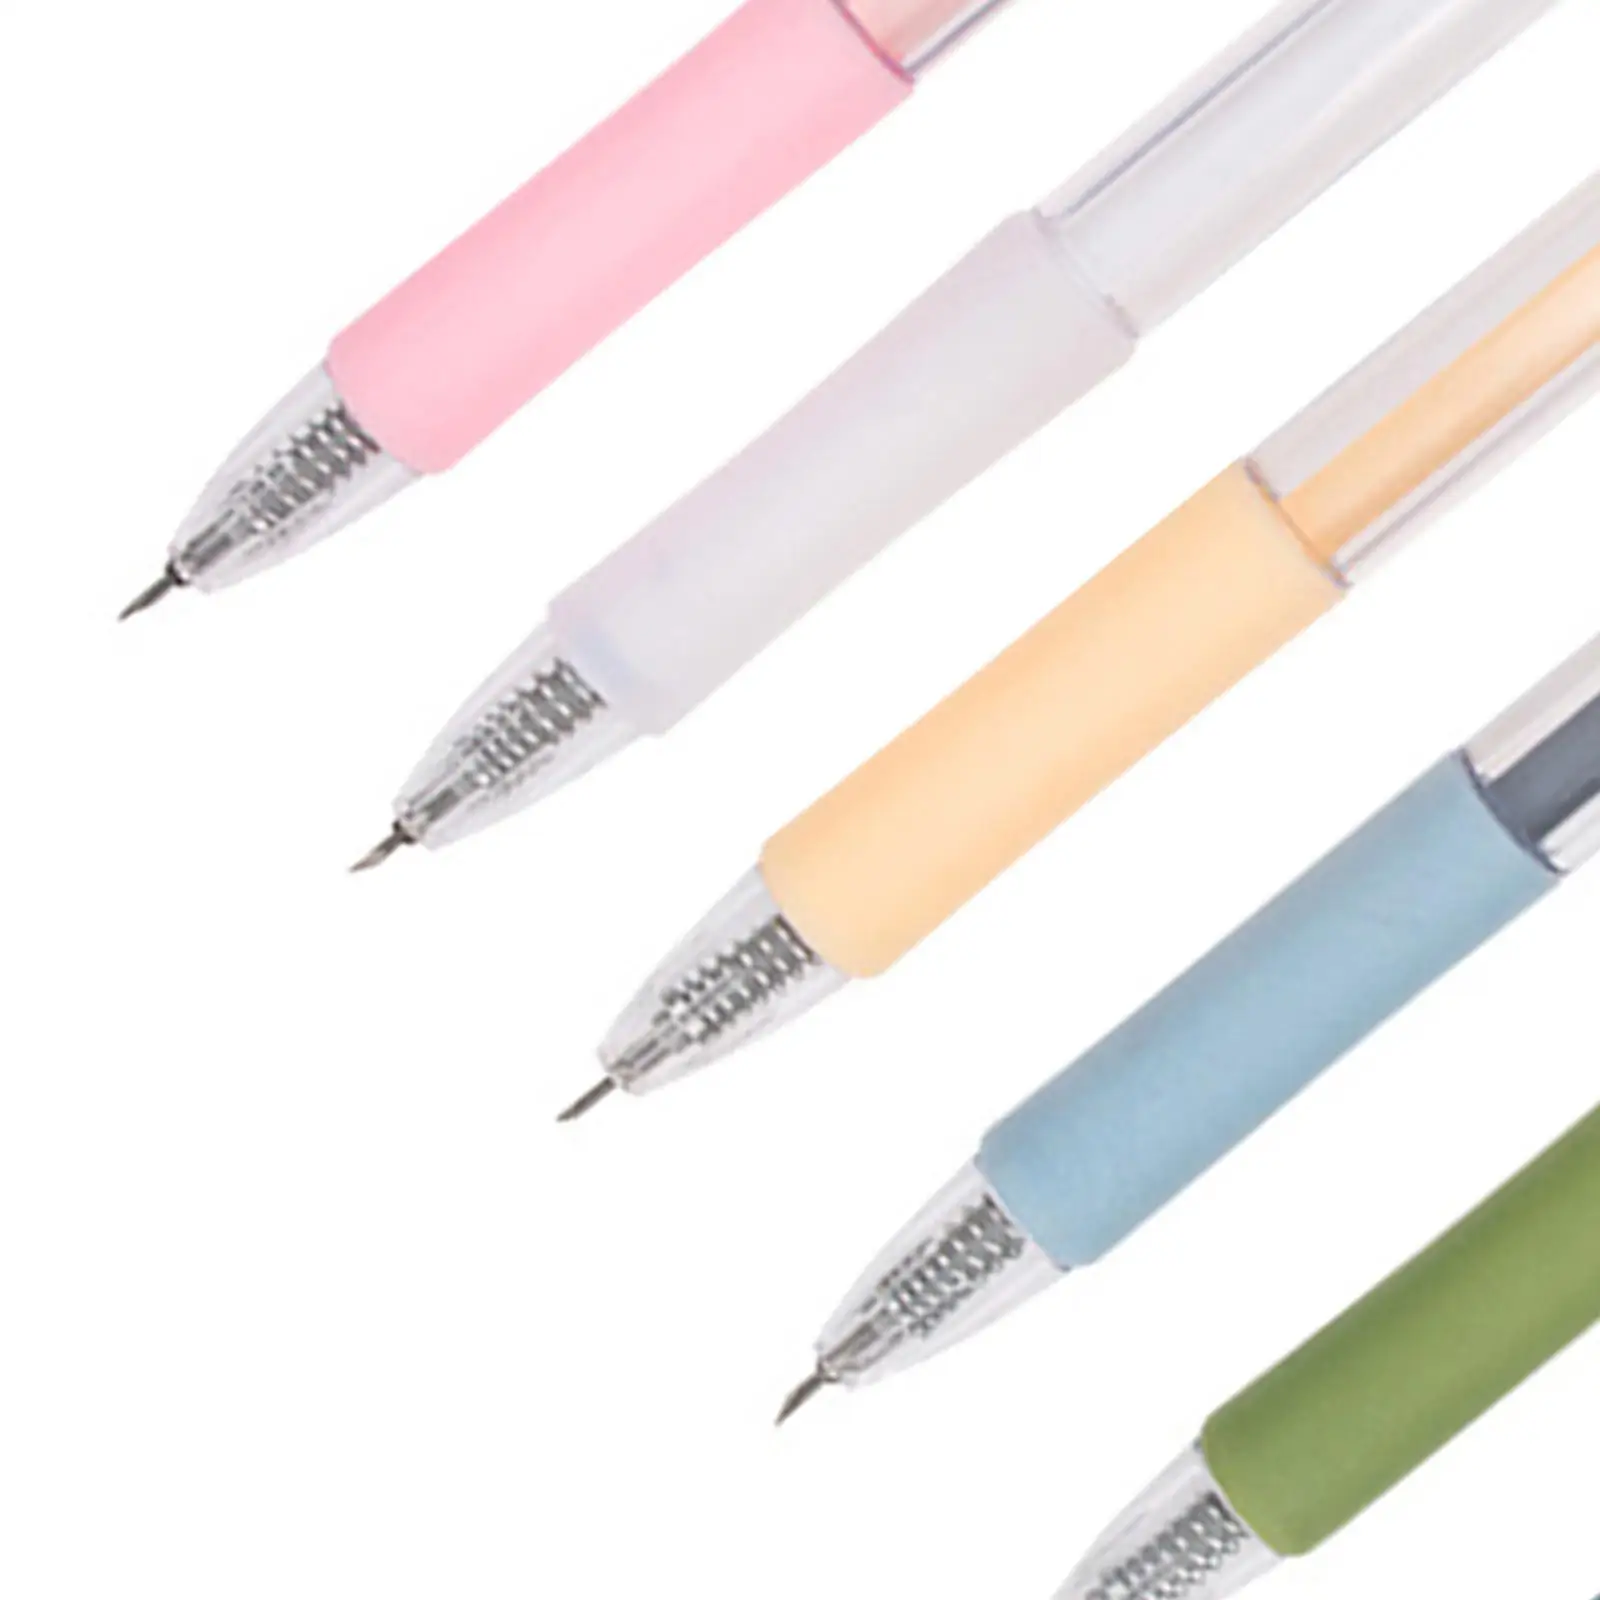 

6x ручка-резак для бумаги, универсальный нож, режущий инструмент для художника, случайный цвет